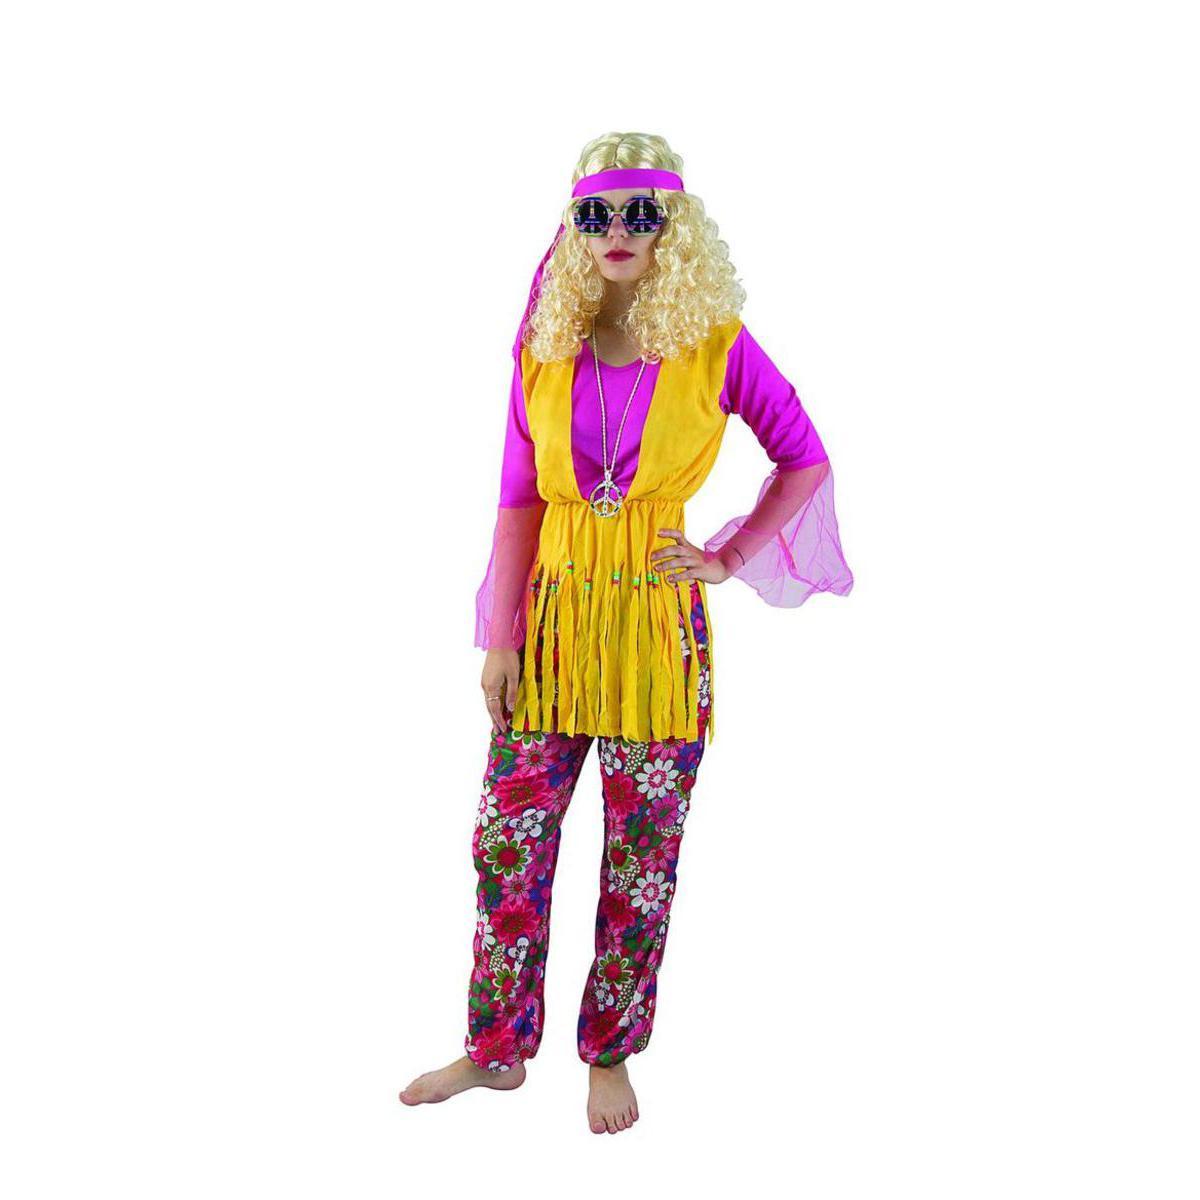 Costume adulte hippie femme en polyester - Taille unique - Multicolore